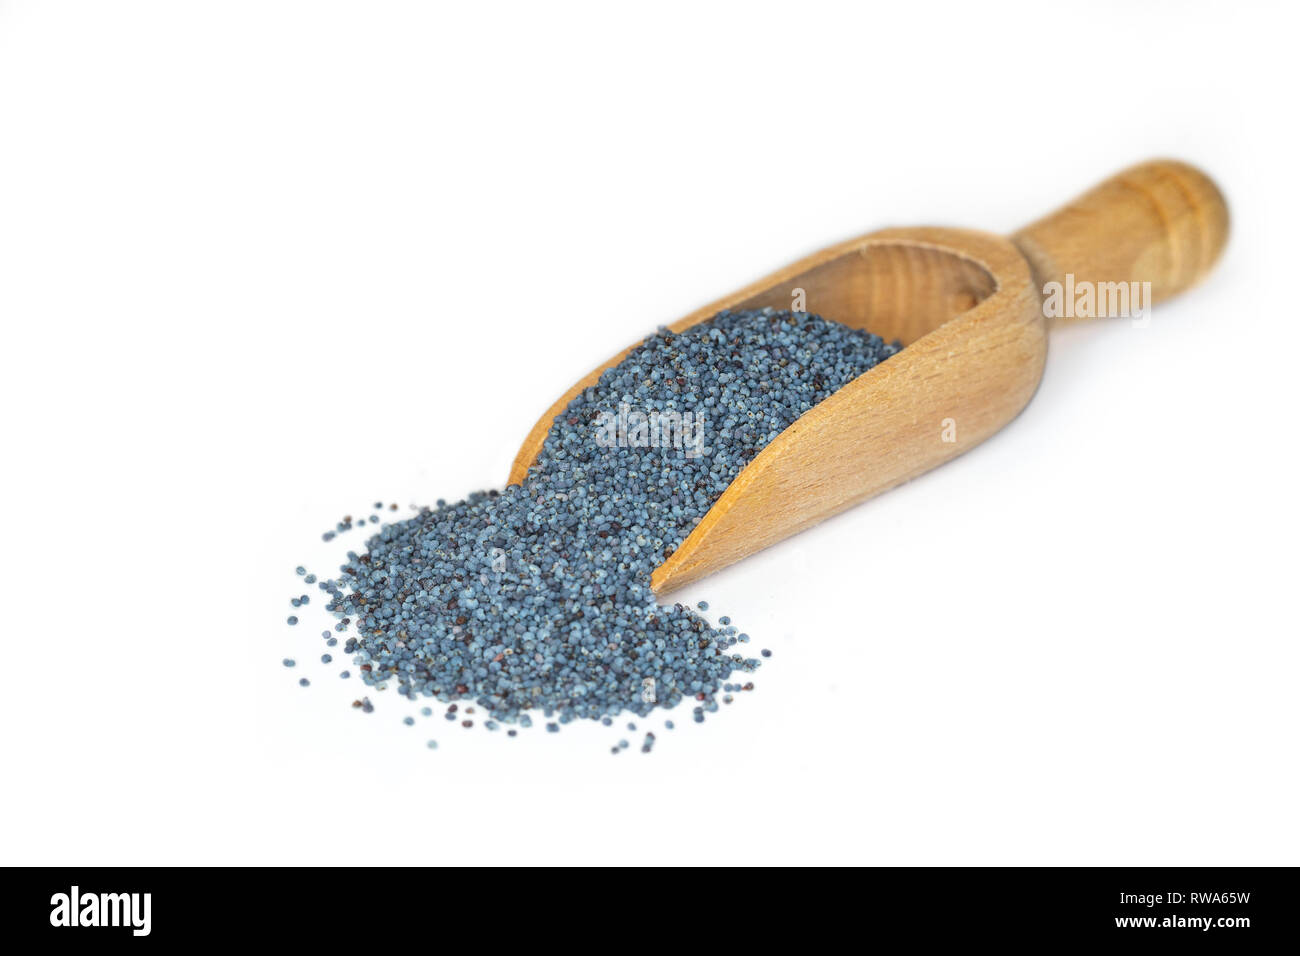 Nahaufnahme des blauen Mohn, ein auf pflanzlicher Basis Quelle für Kalzium, auf eine kleine hölzerne Schaufel dargestellt Stockfoto